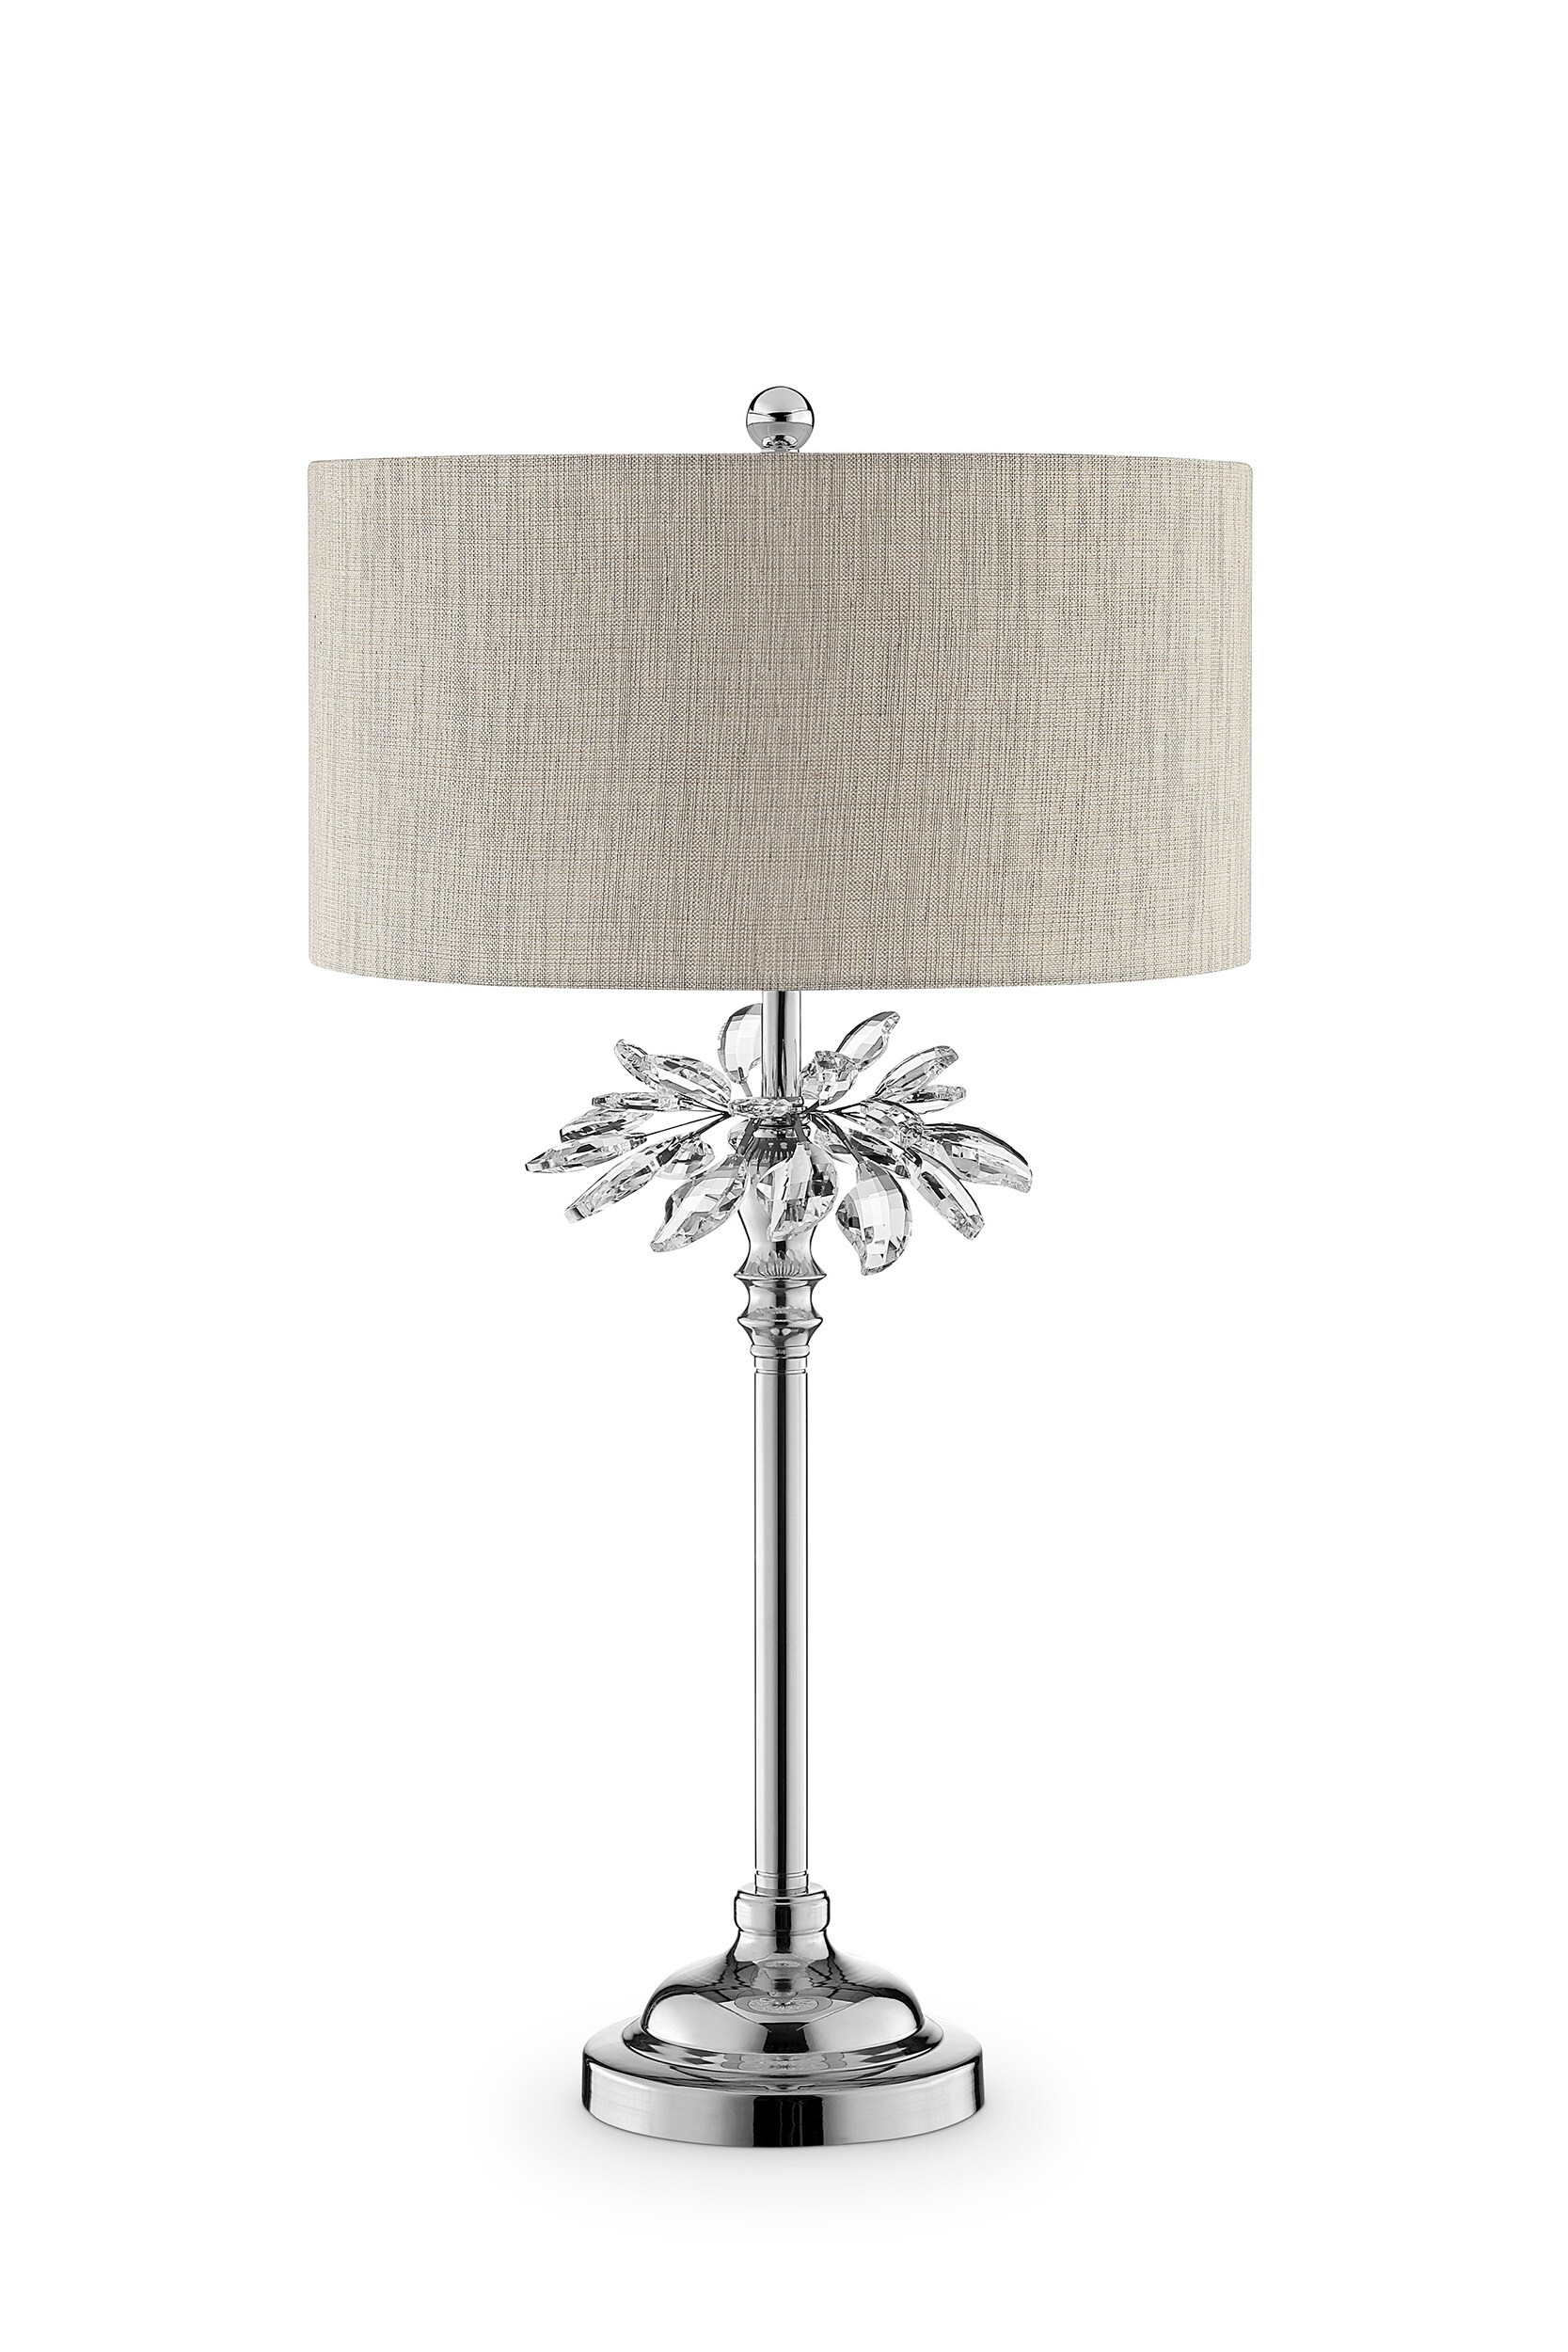 Silver Aluminum Flower Vase Design Table Lamp Floor Light Floral & Crystal Ends 